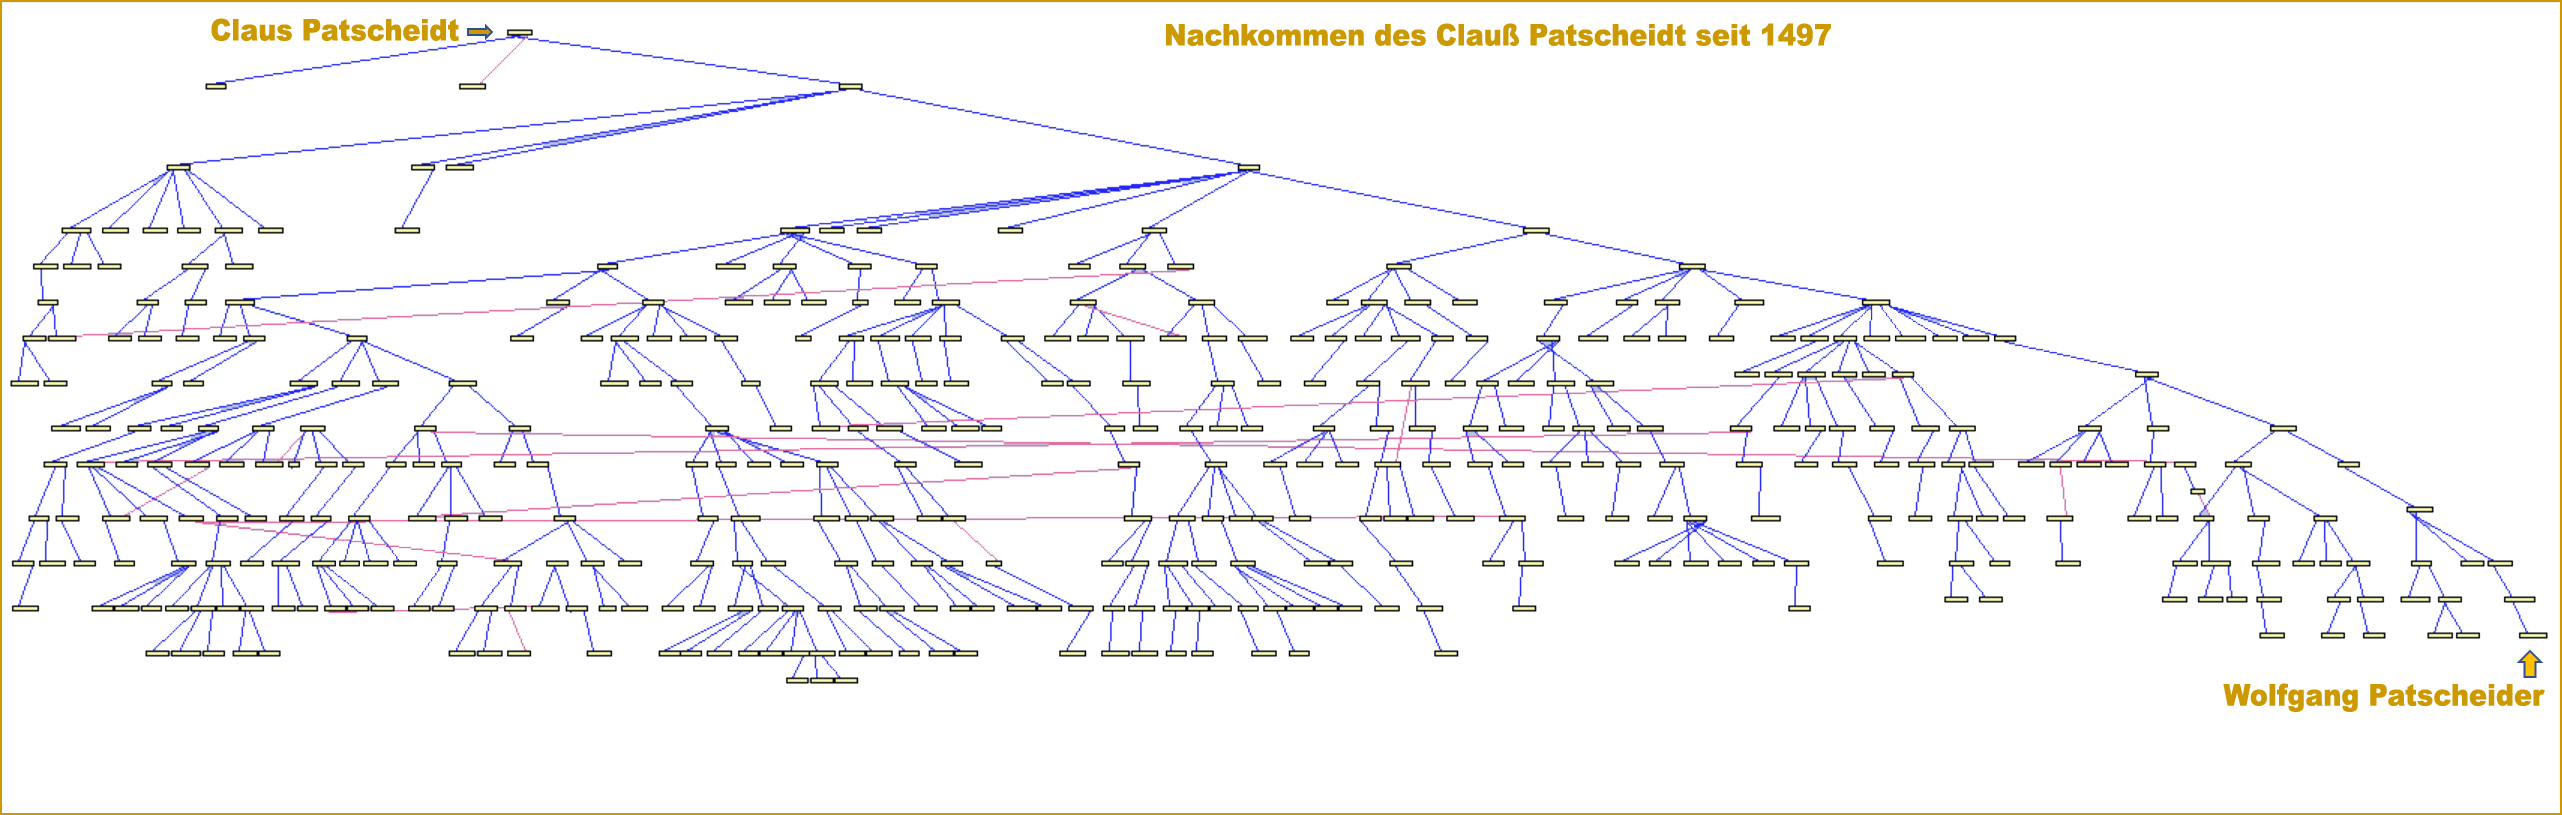 Stammbaum mit Nachkommen des Claus Patscheider seit 1497